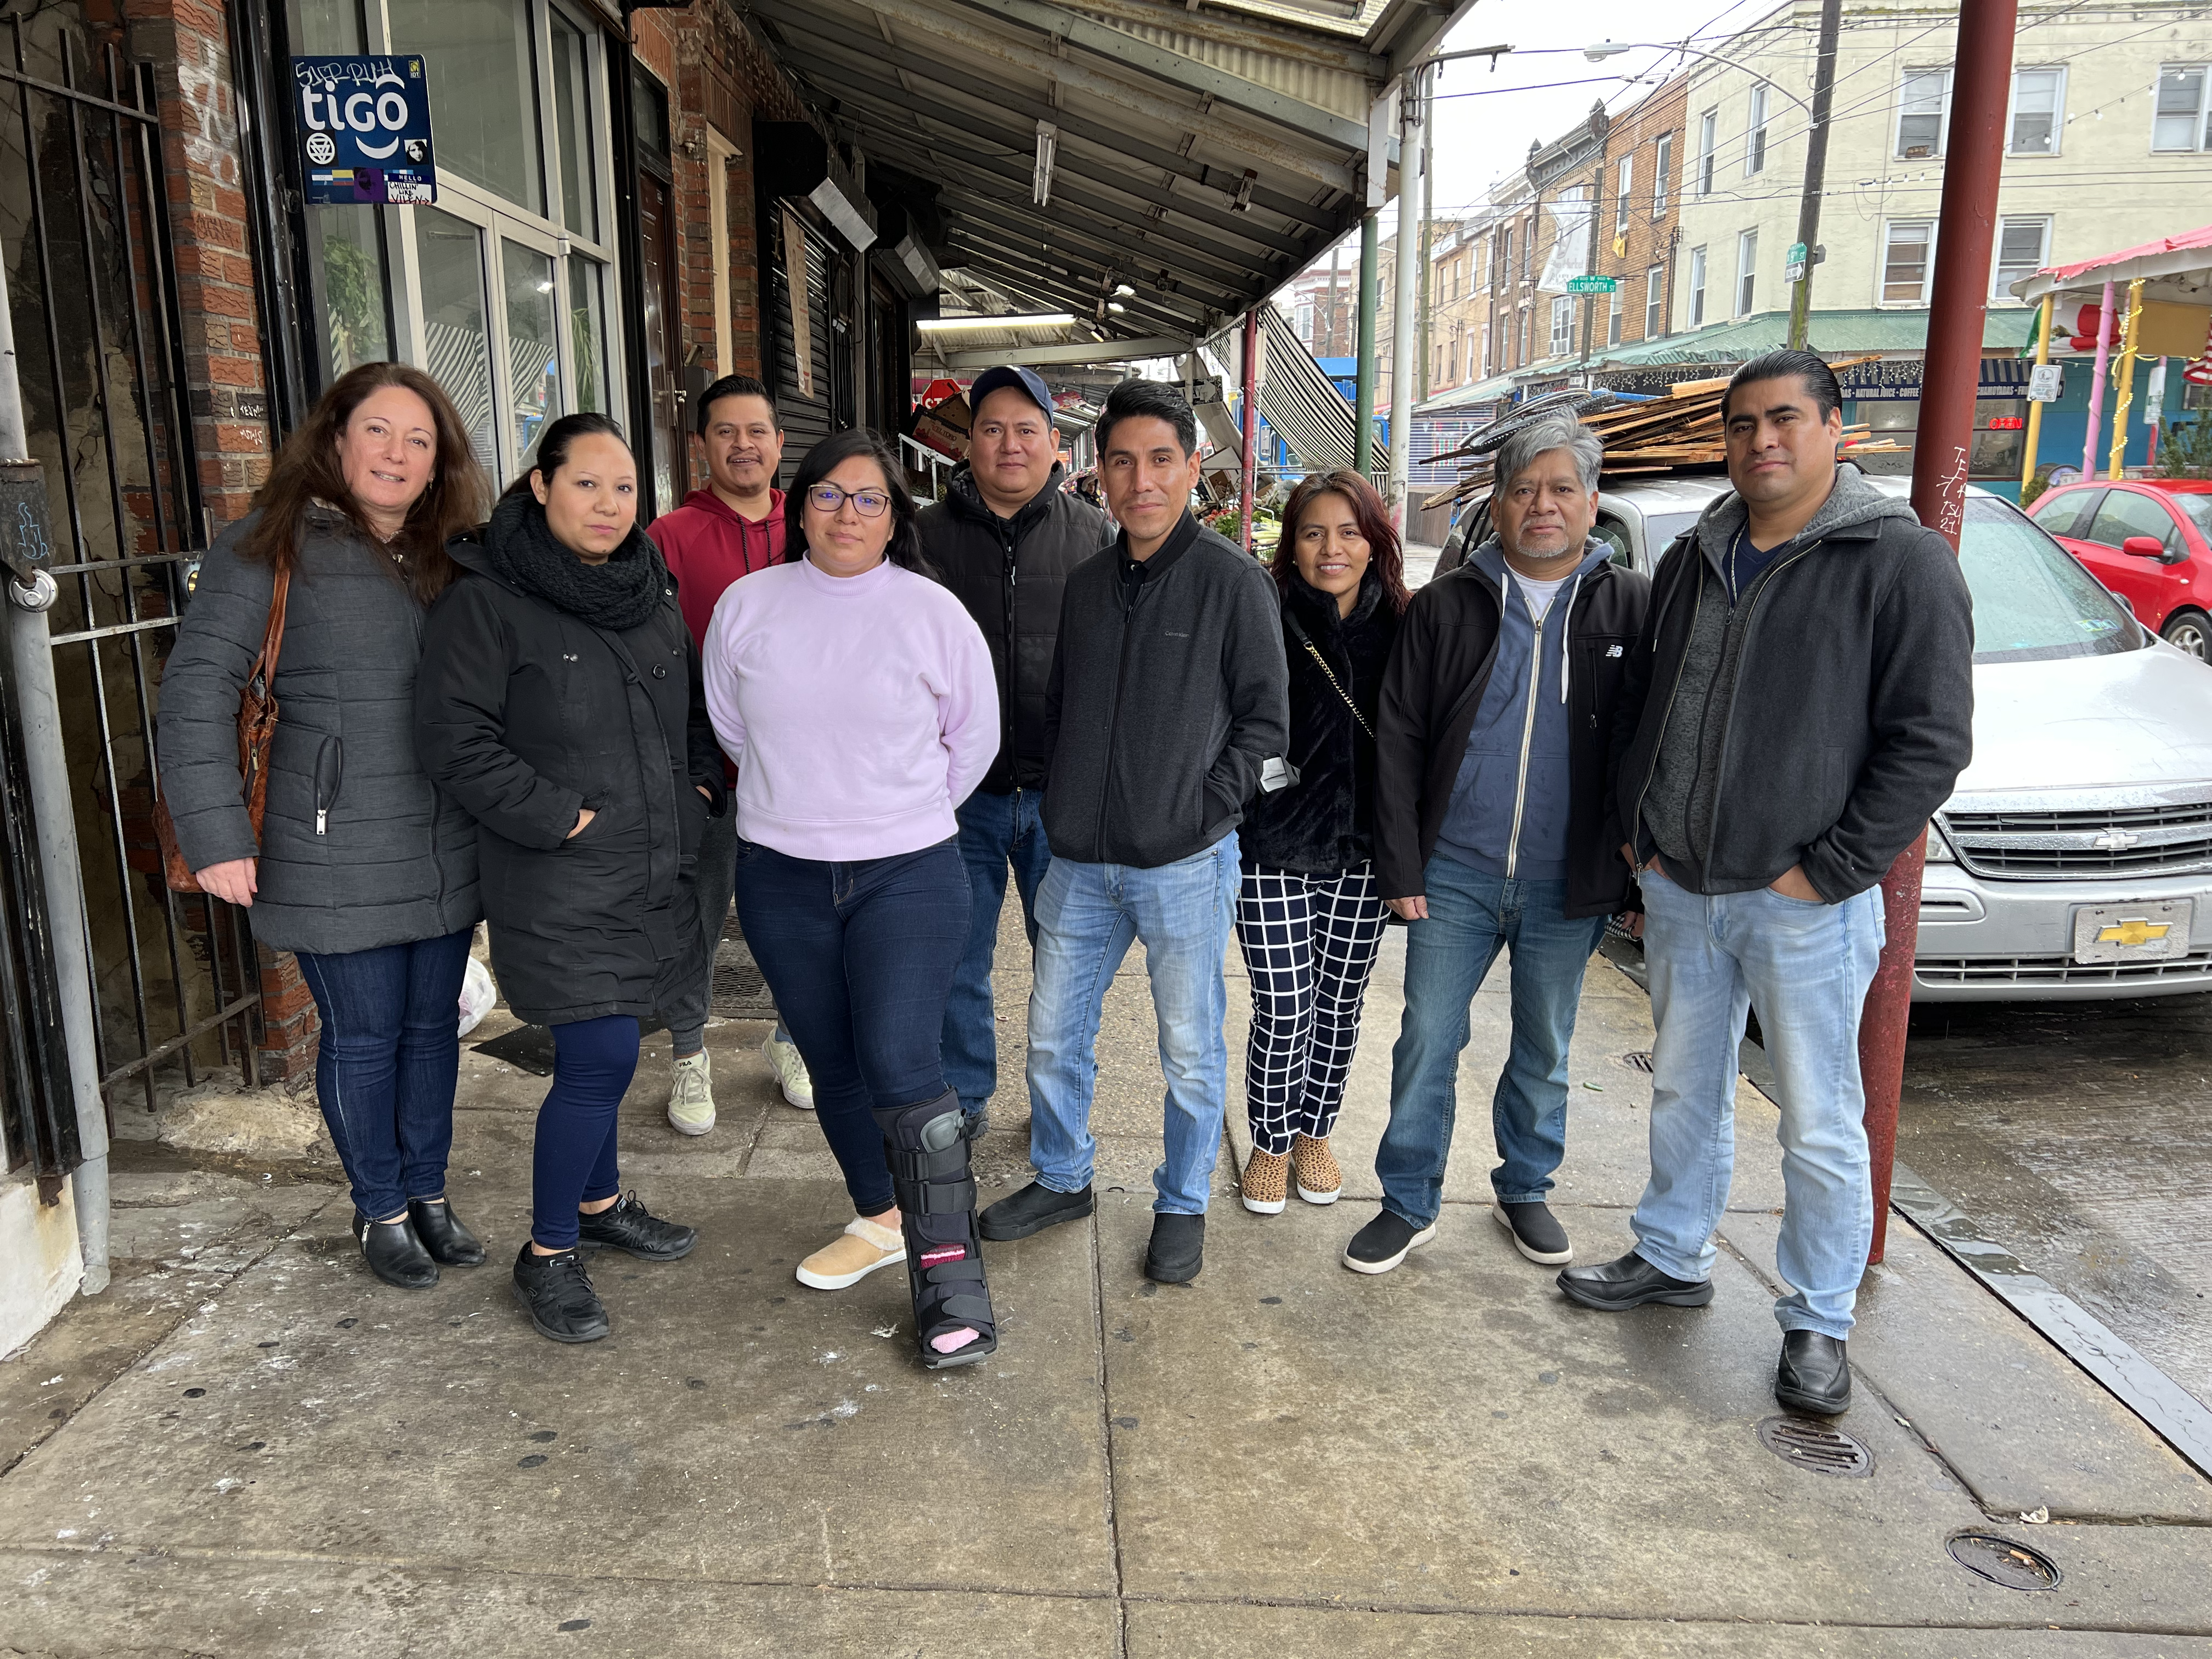 The Asociación de Empresarios Mexicanos en Filadelfia aims to promote the cultural and economic contributions that Latino merchants make to the city.  Photo courtesy of Asociación de Empresarios Mexicanos en Filadelfia.